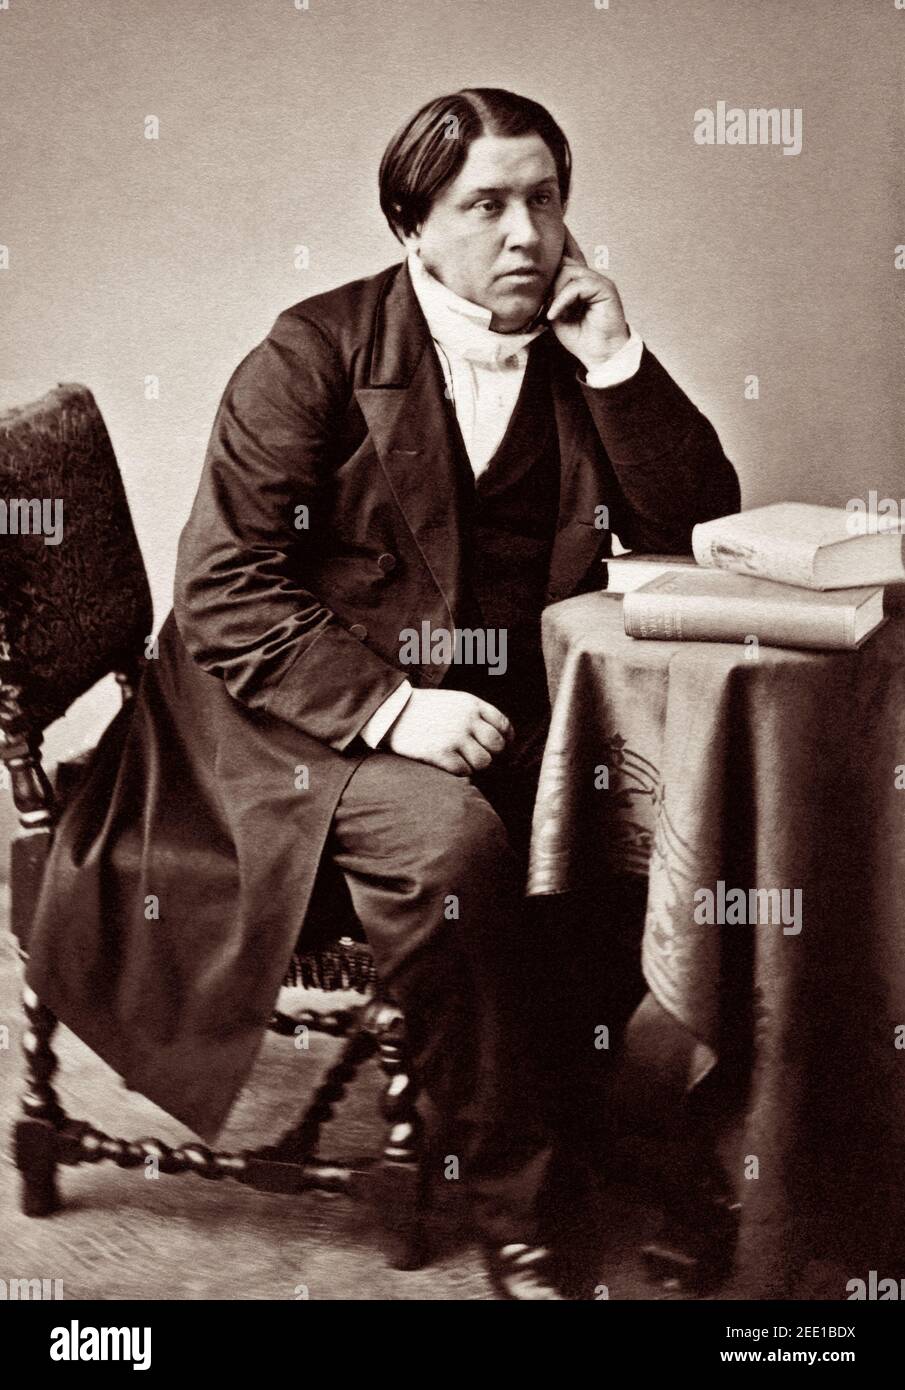 Charles Haddon (C.H.) Spurgeon (1834–1892), ein populärer und einflussreicher Baptistenminister und Pastor des Londoner Metropolitan Tabernacle, der als "Prinz der Prediger" bekannt ist, zeigt in seinen jüngeren Jahren, um 1860. Stockfoto